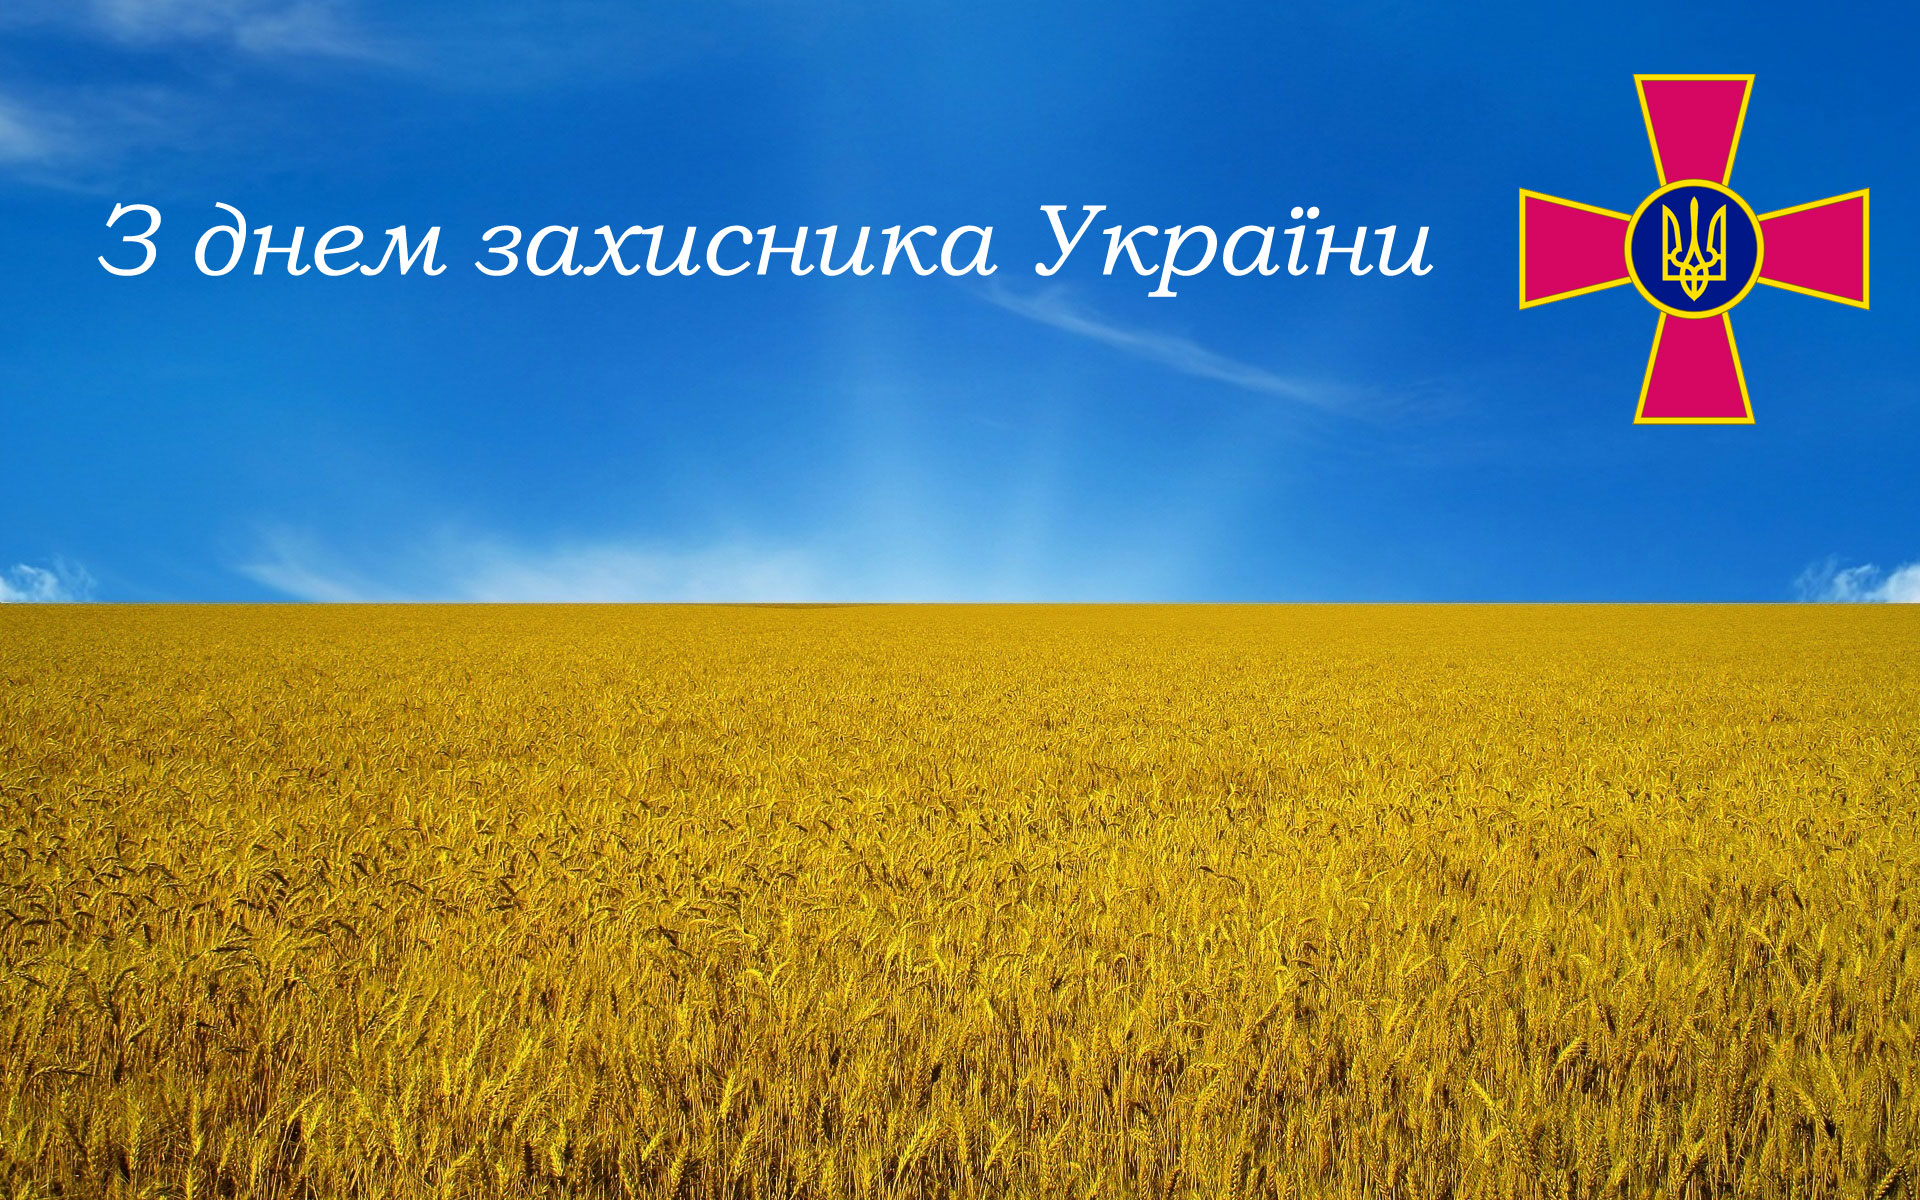 Вітання з днем захисника України